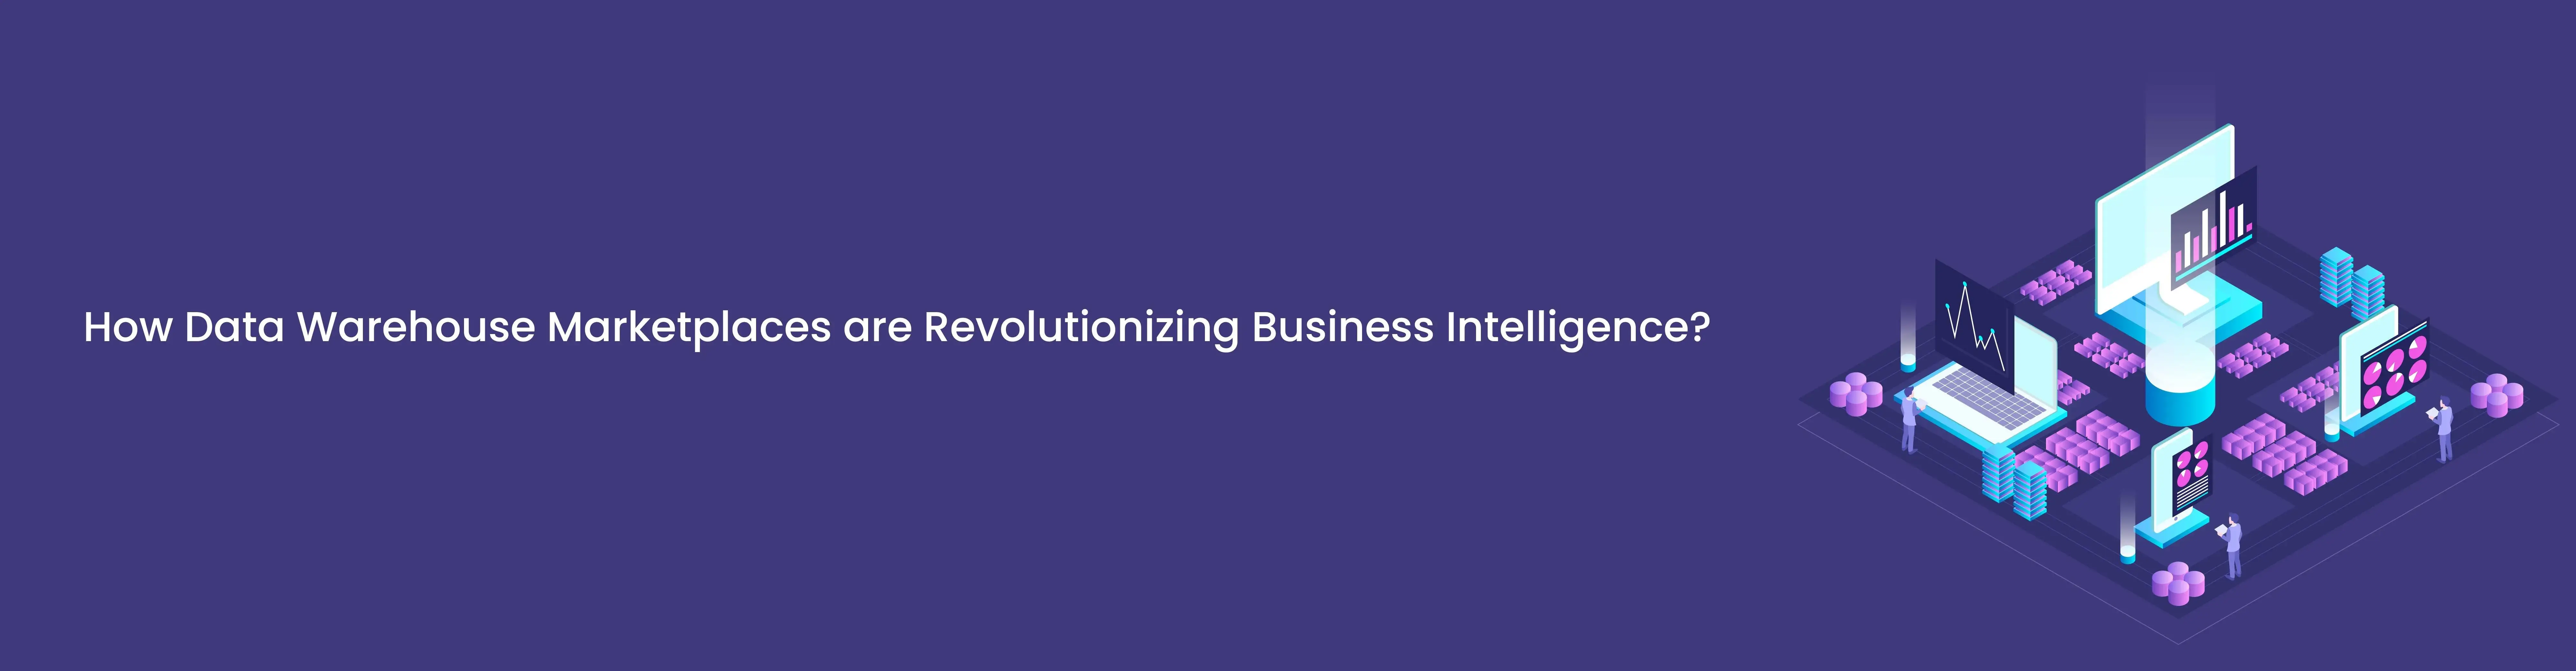 How Data Warehouse Marketplaces are Revolutionizing Business Intelligence?